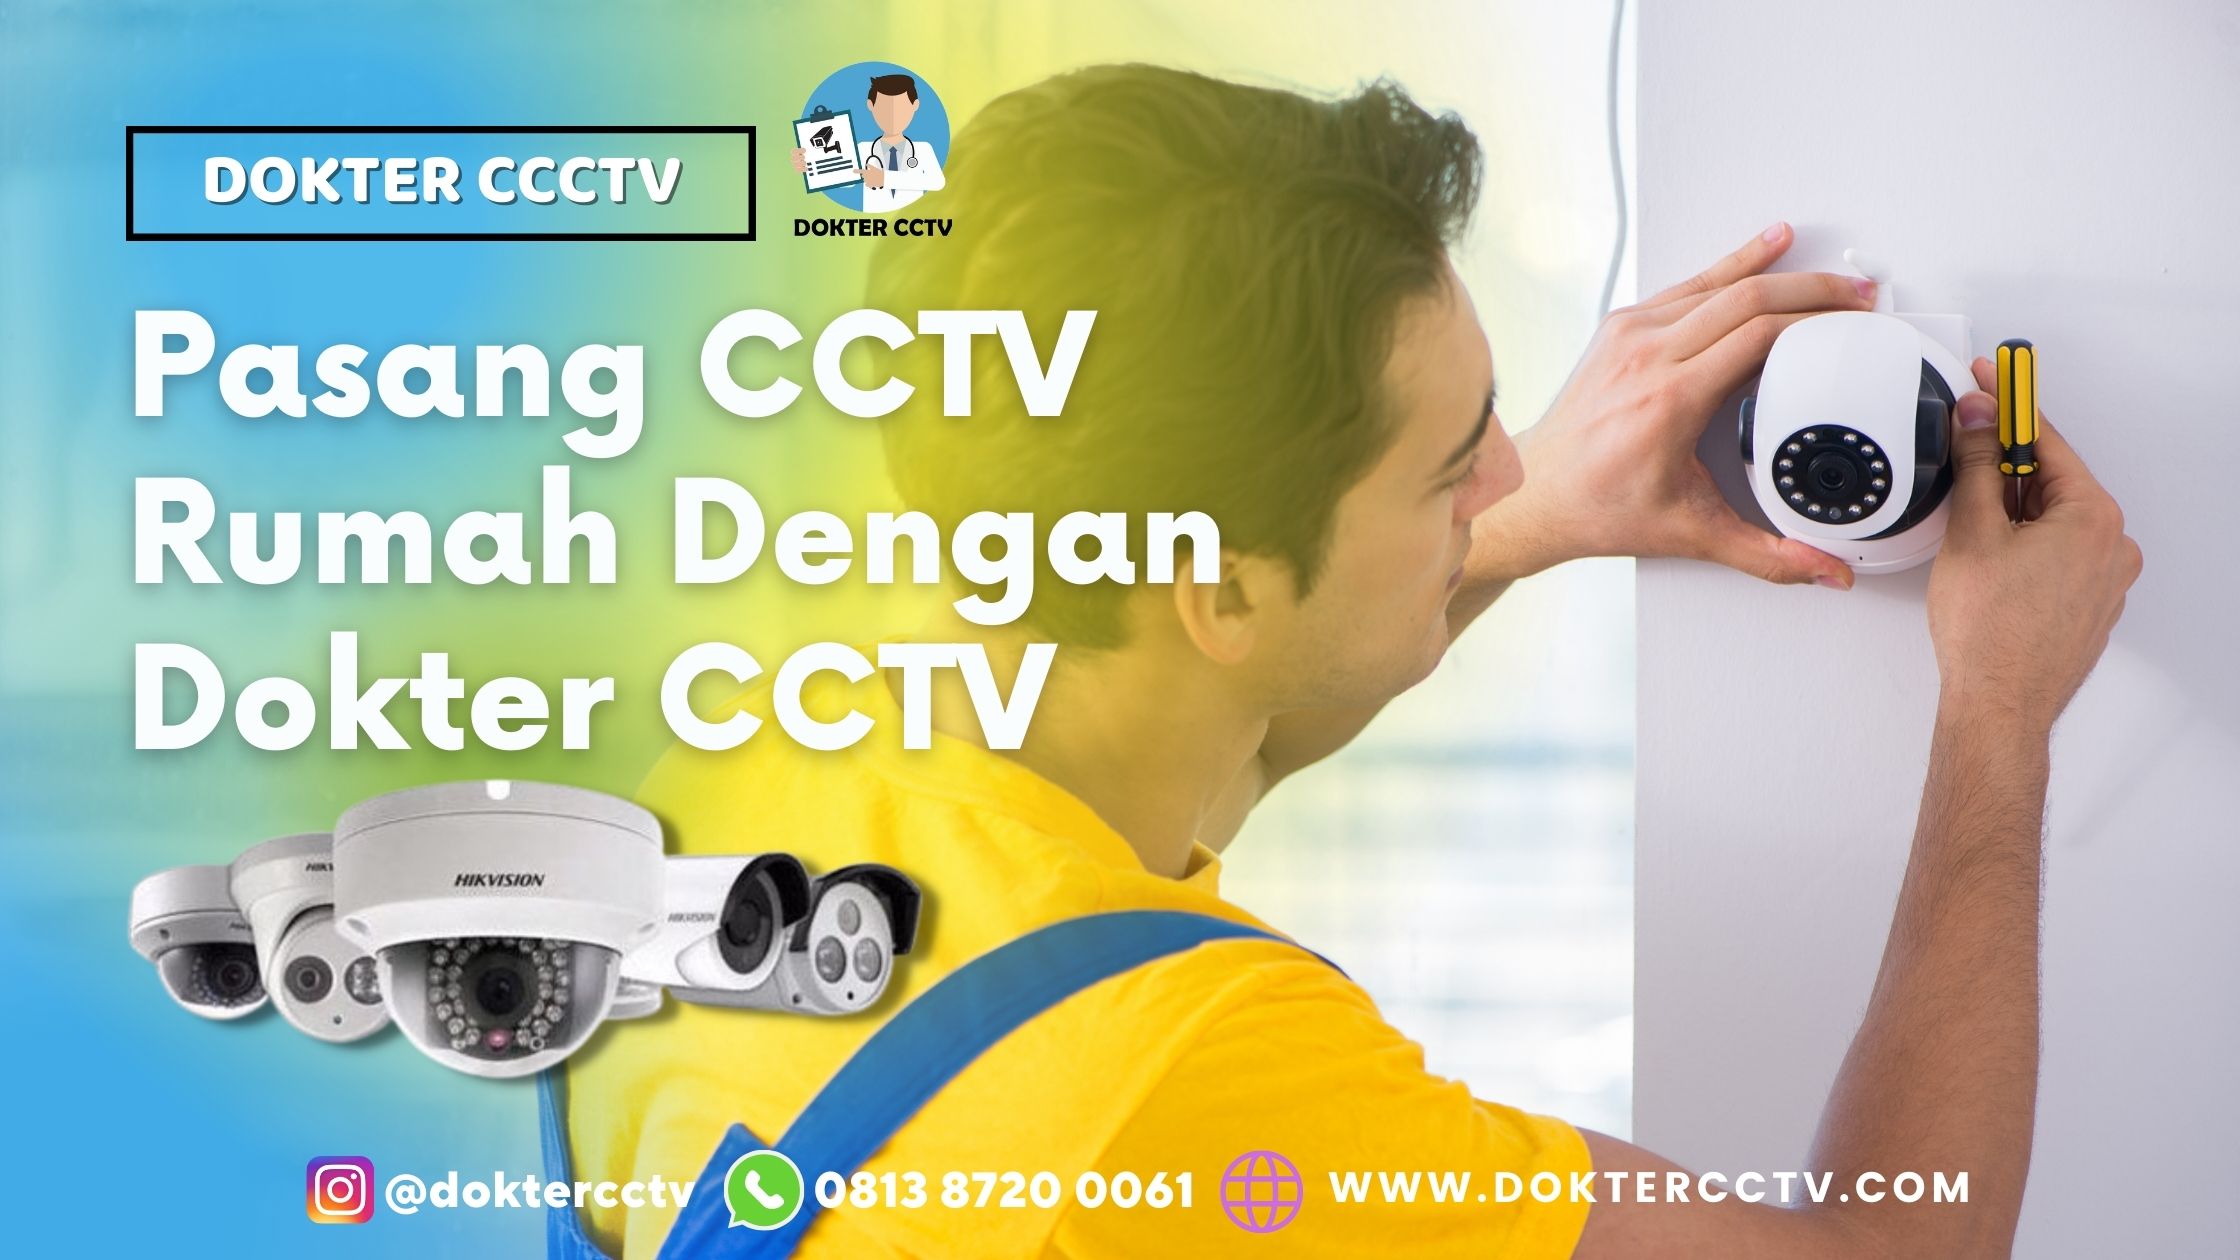 Pasang CCTV Rumah Dengan Dokter CCTV